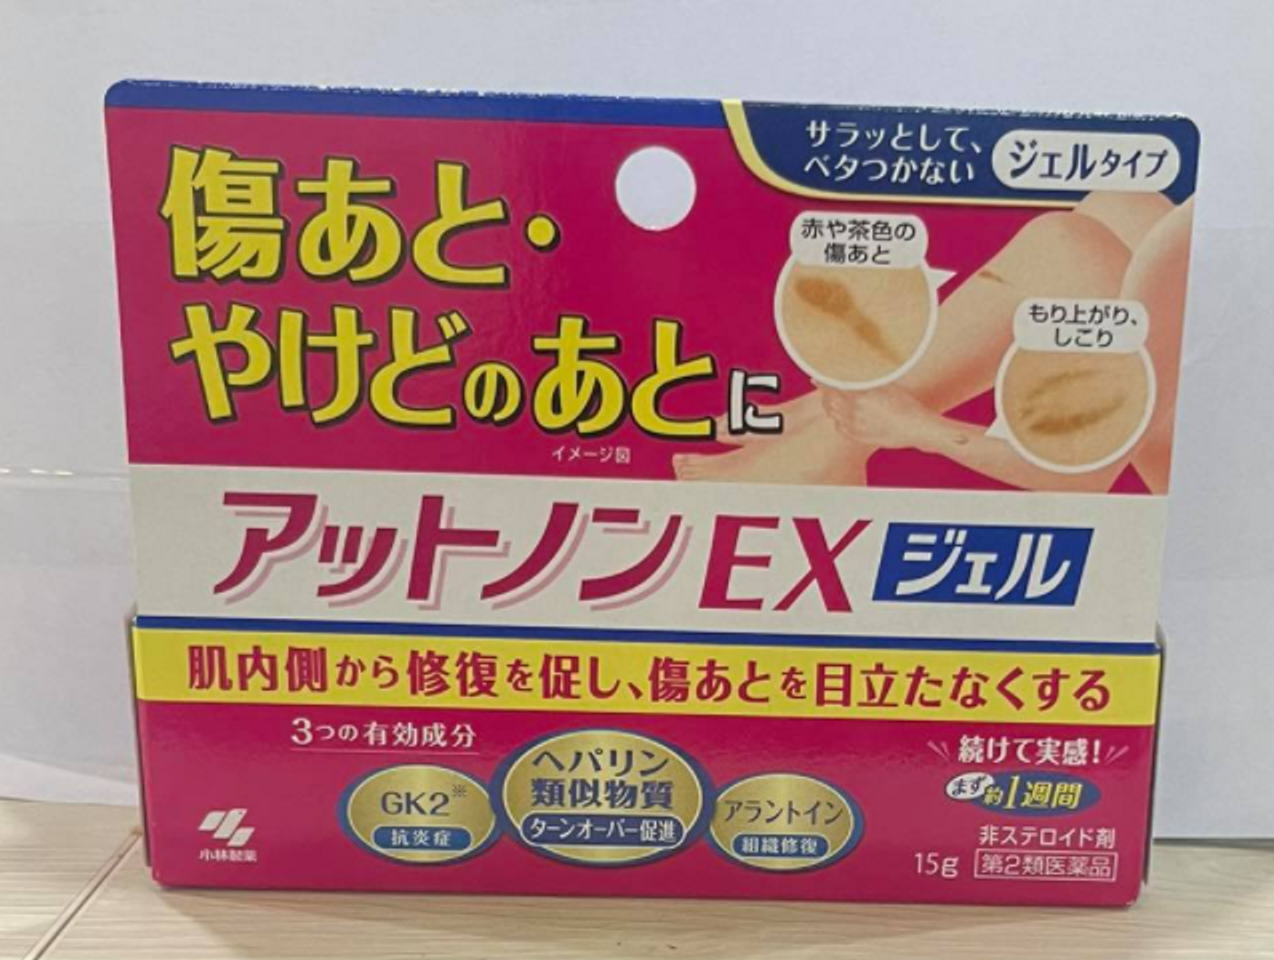 Sử dụng kem Kobayashi theo hướng dẫn để có hiệu quả tối ưu (dạng gel)